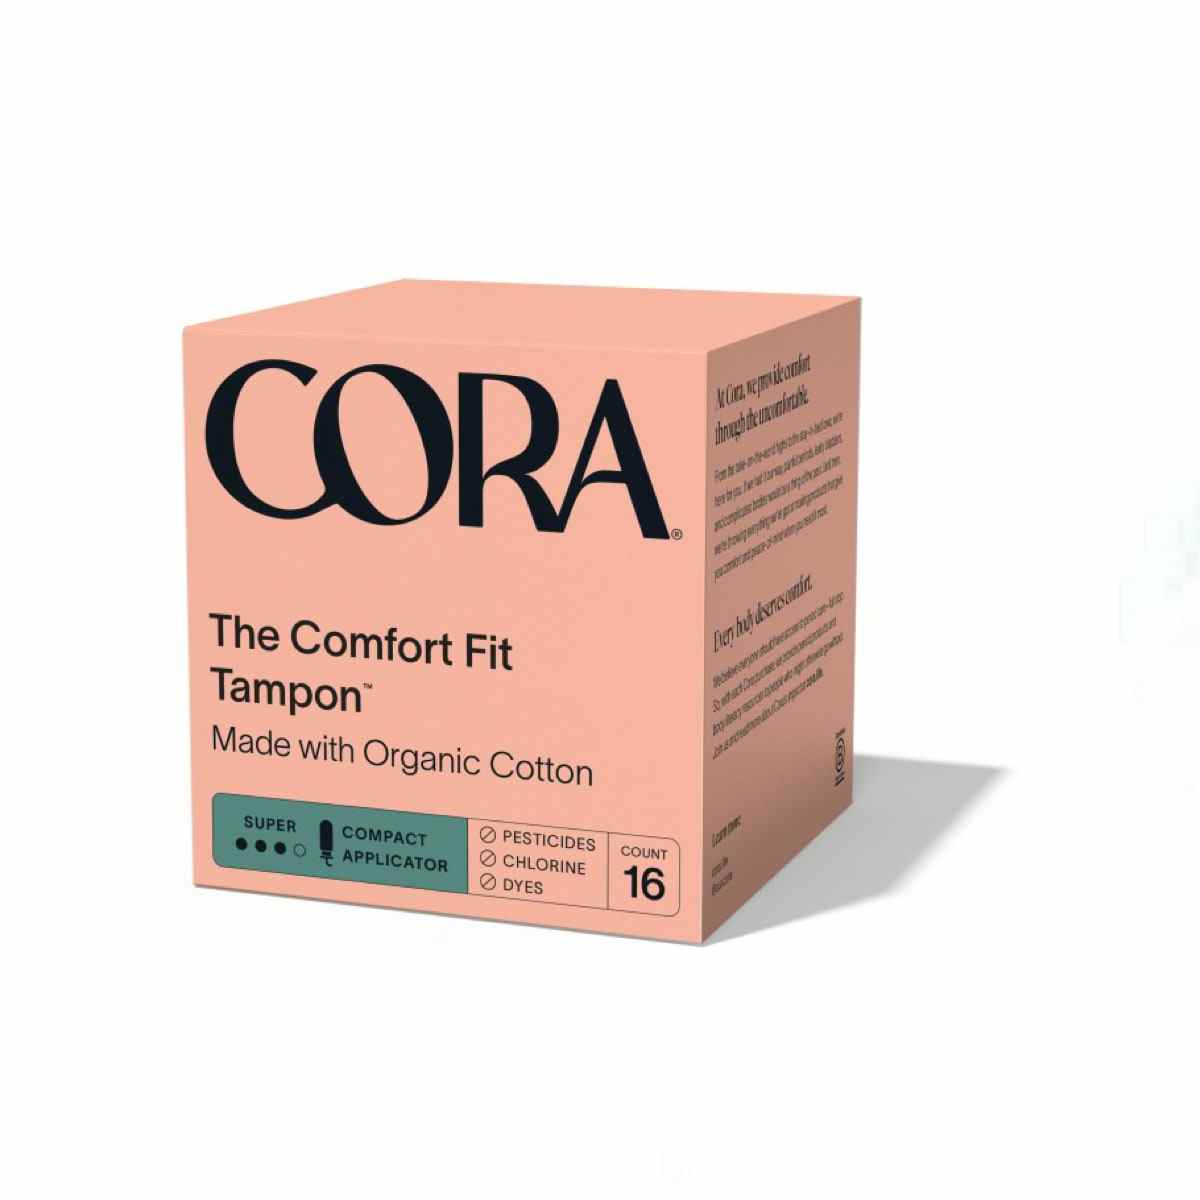 Pink Cora The Comfort Fit Tampon-Box auf weißem Hintergrund